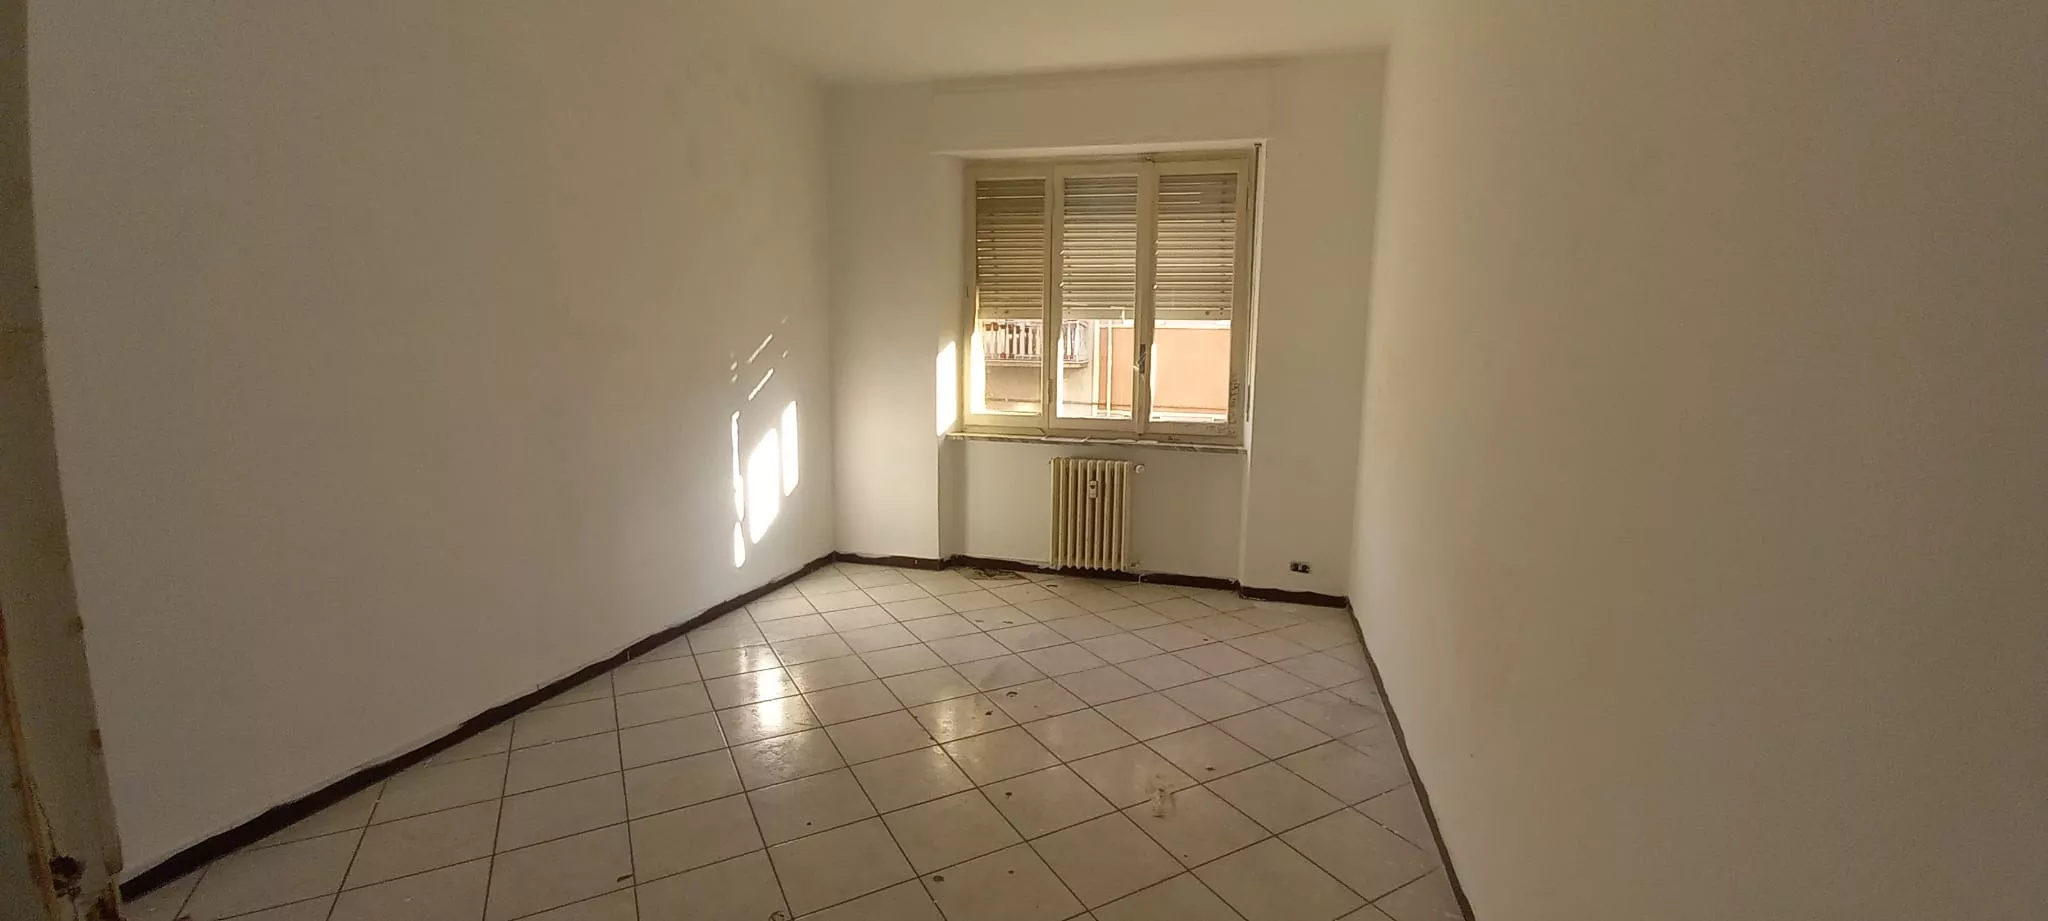 Immagine per Appartamento in affitto a Asti corso Matteotti 121